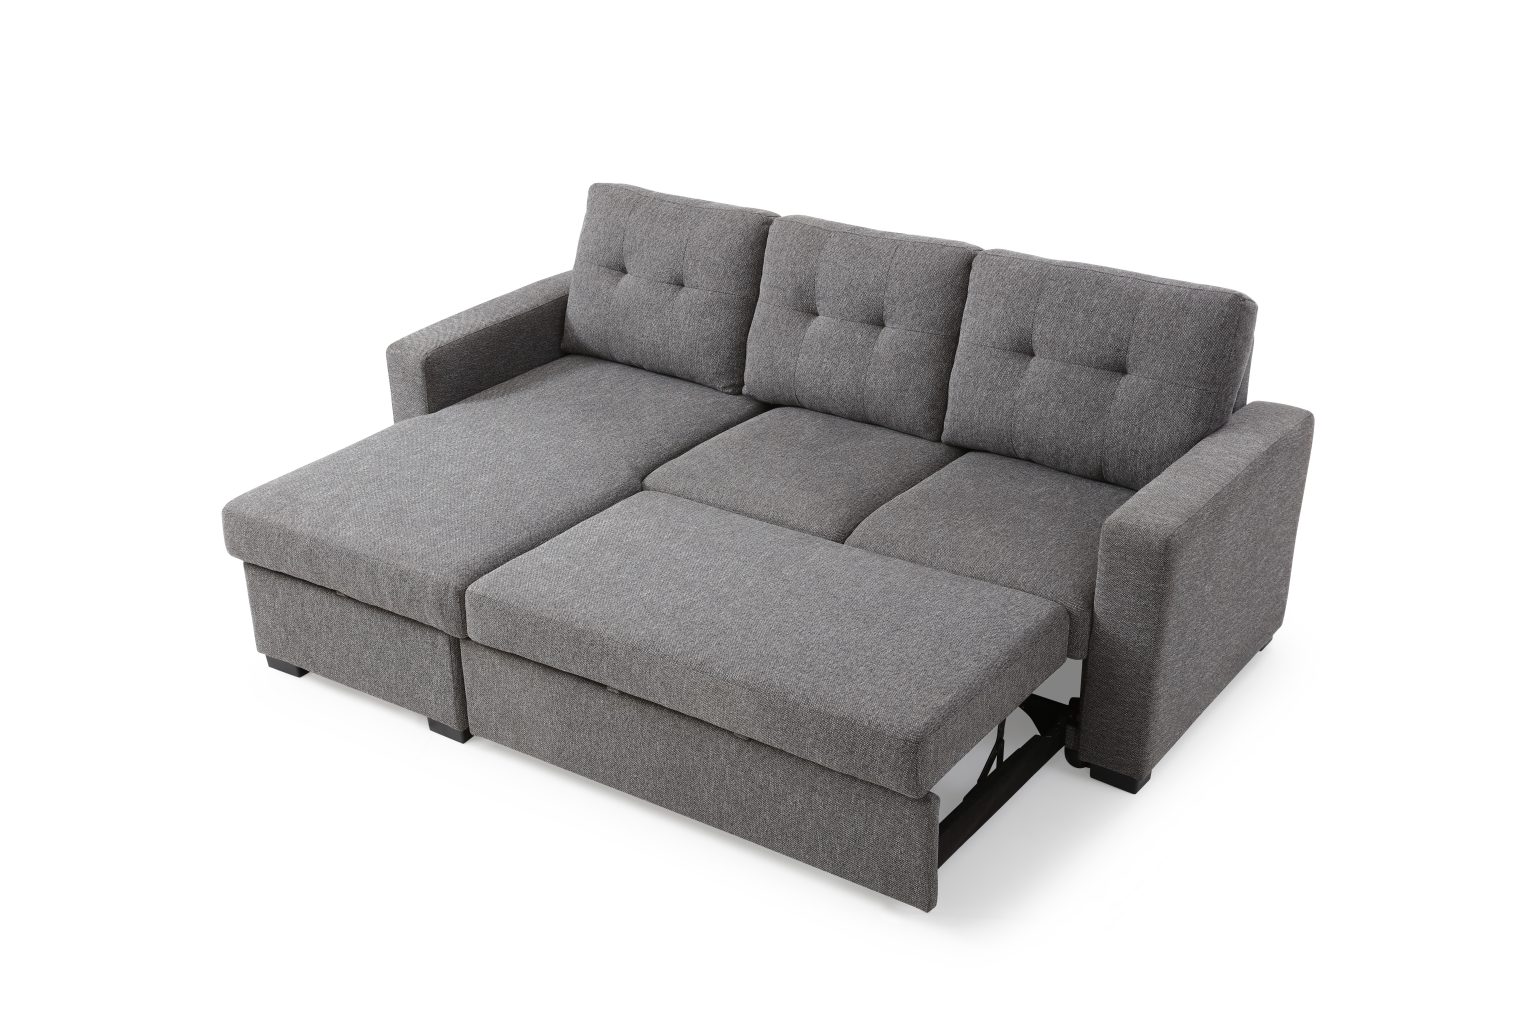 retro corner sofa bed